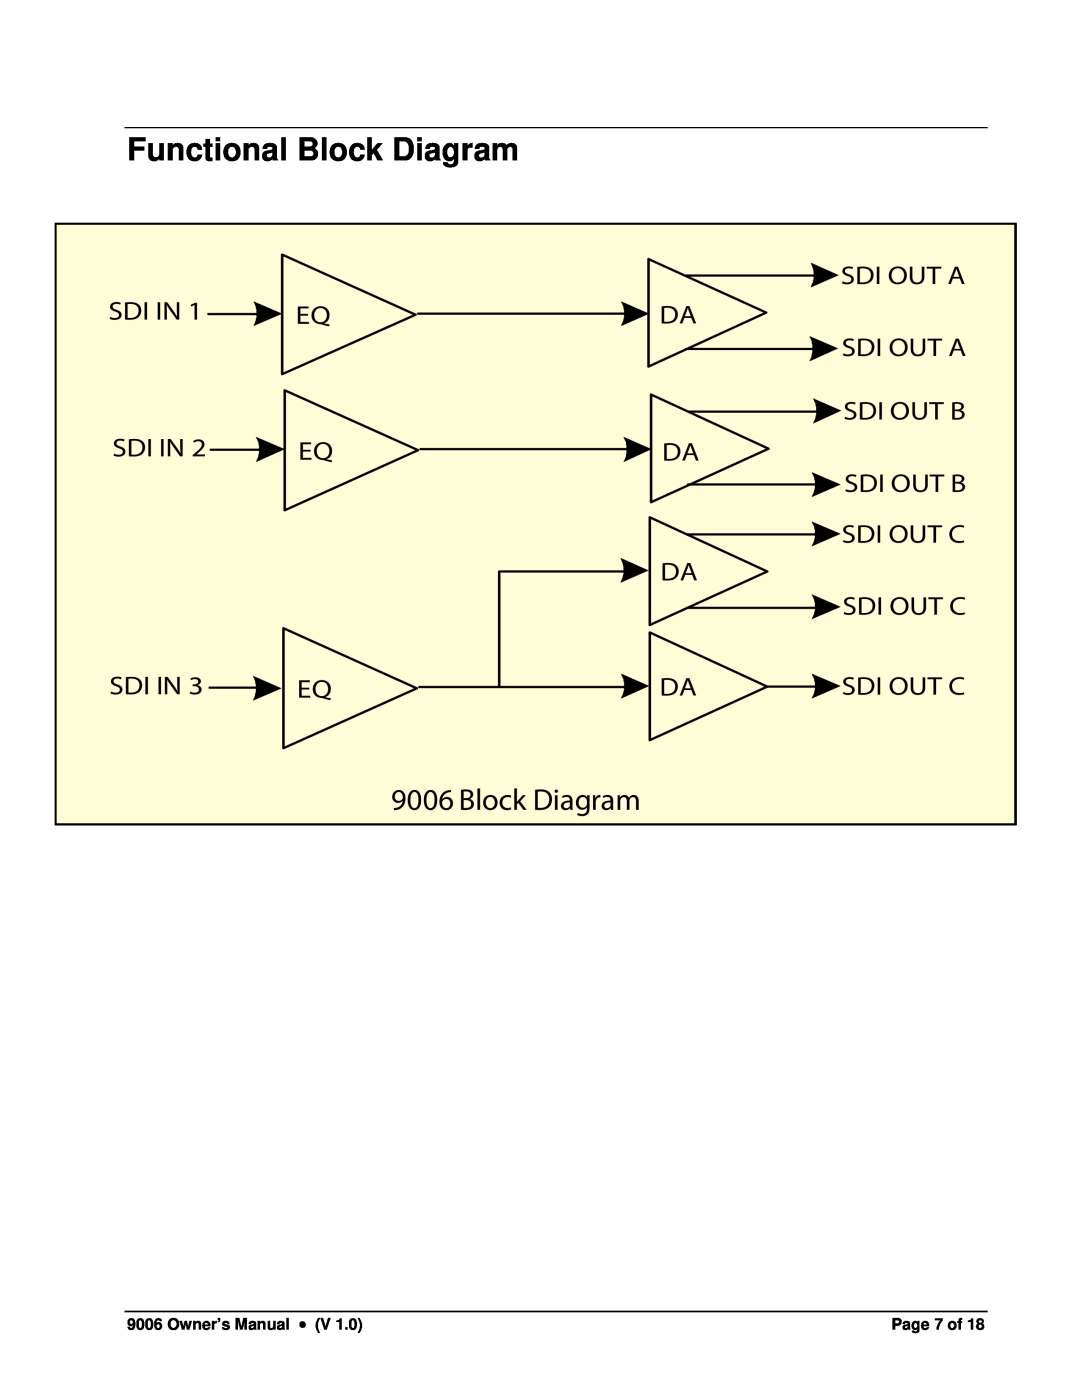 Cobalt Networks 9006 owner manual Functional Block Diagram 